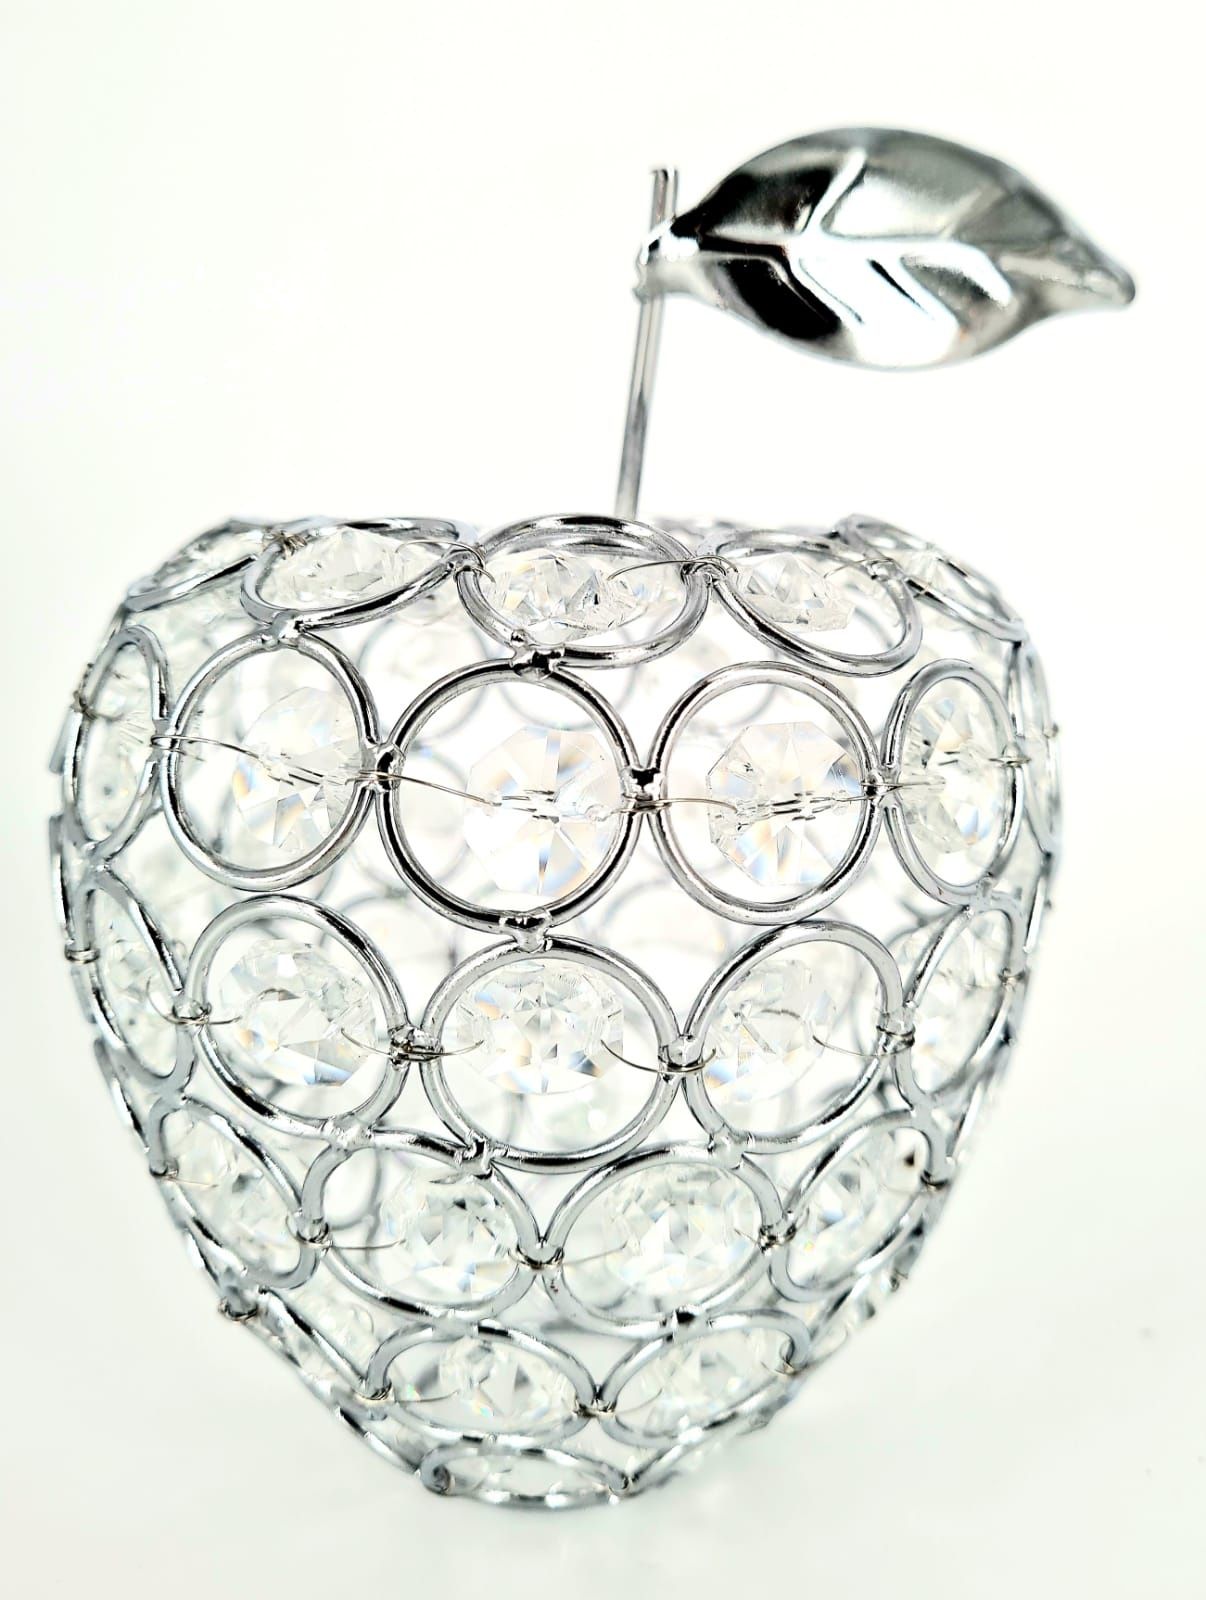 Nowy piękny srebrny świecznik jabłko z kryształkami